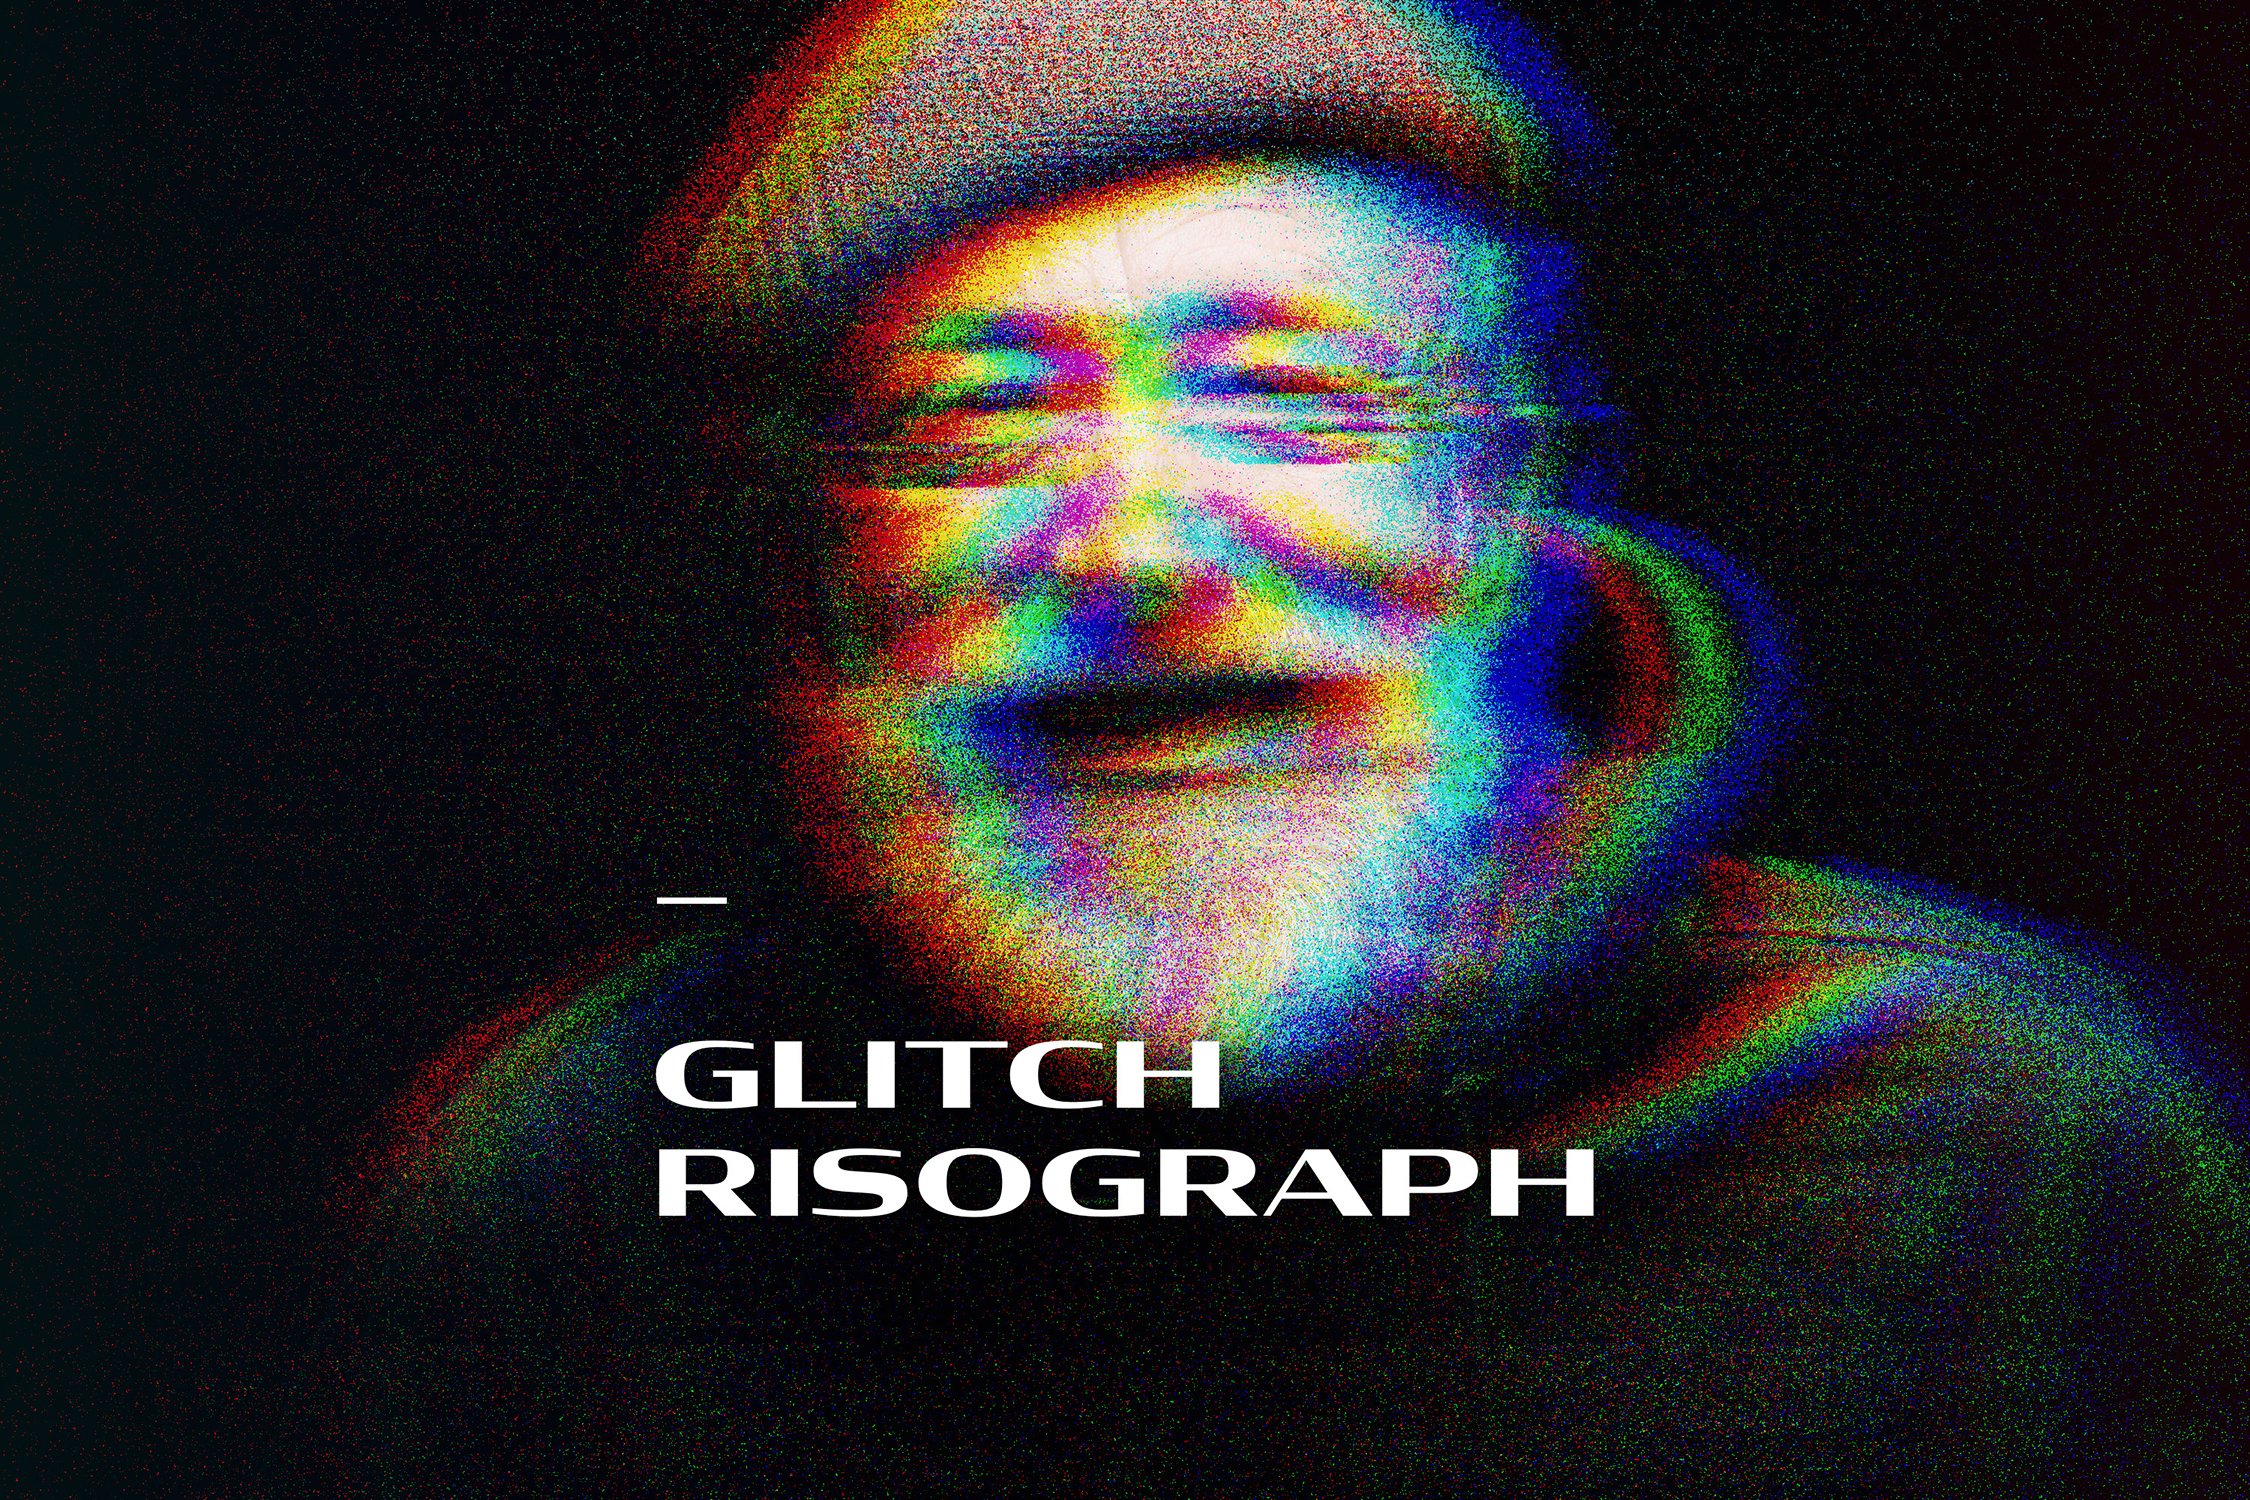 Glitch Risograph Photo Effectcover image.